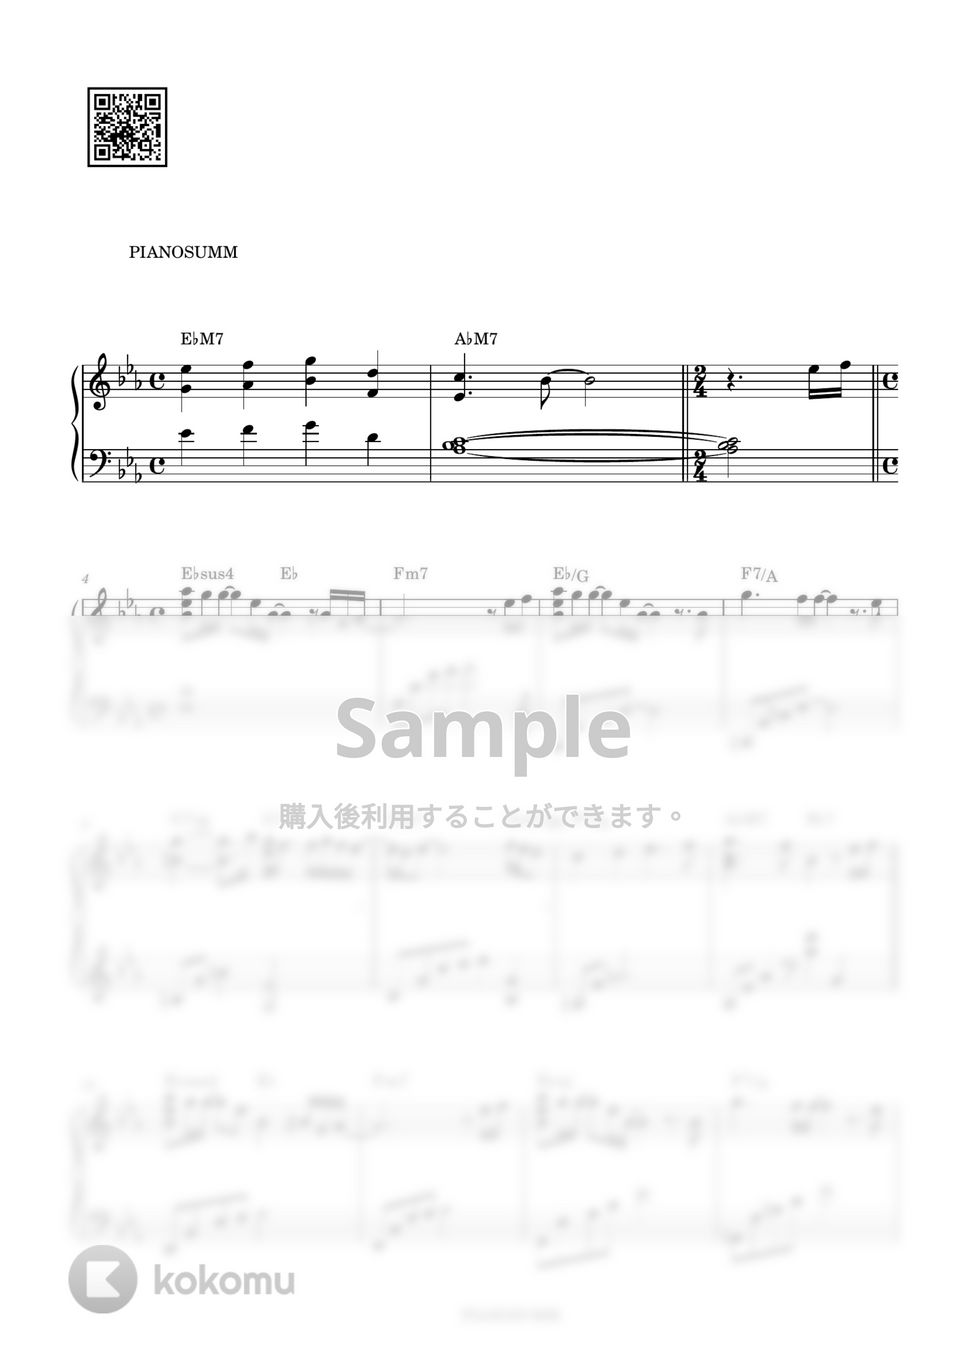 아이유 (IU) - 자장가 (Lullaby) by PIANOSUMM